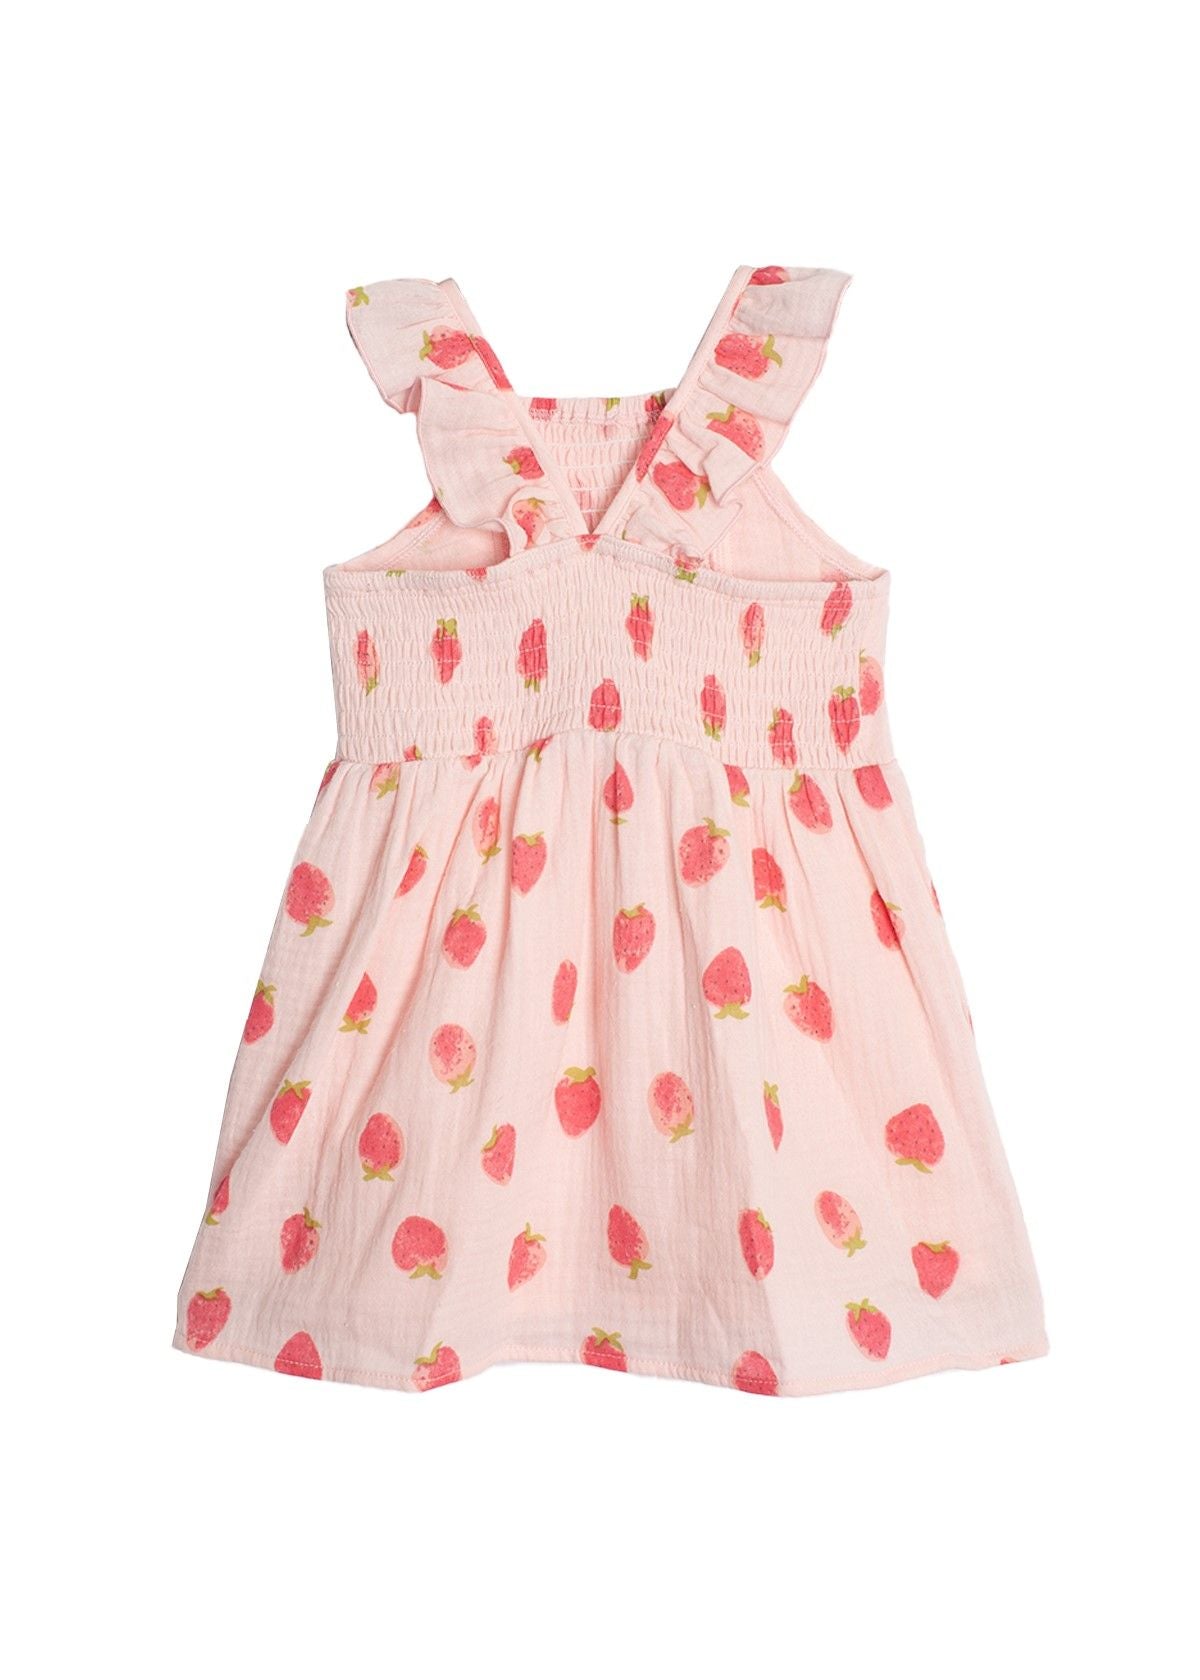 Berrylicious Dress | Pink